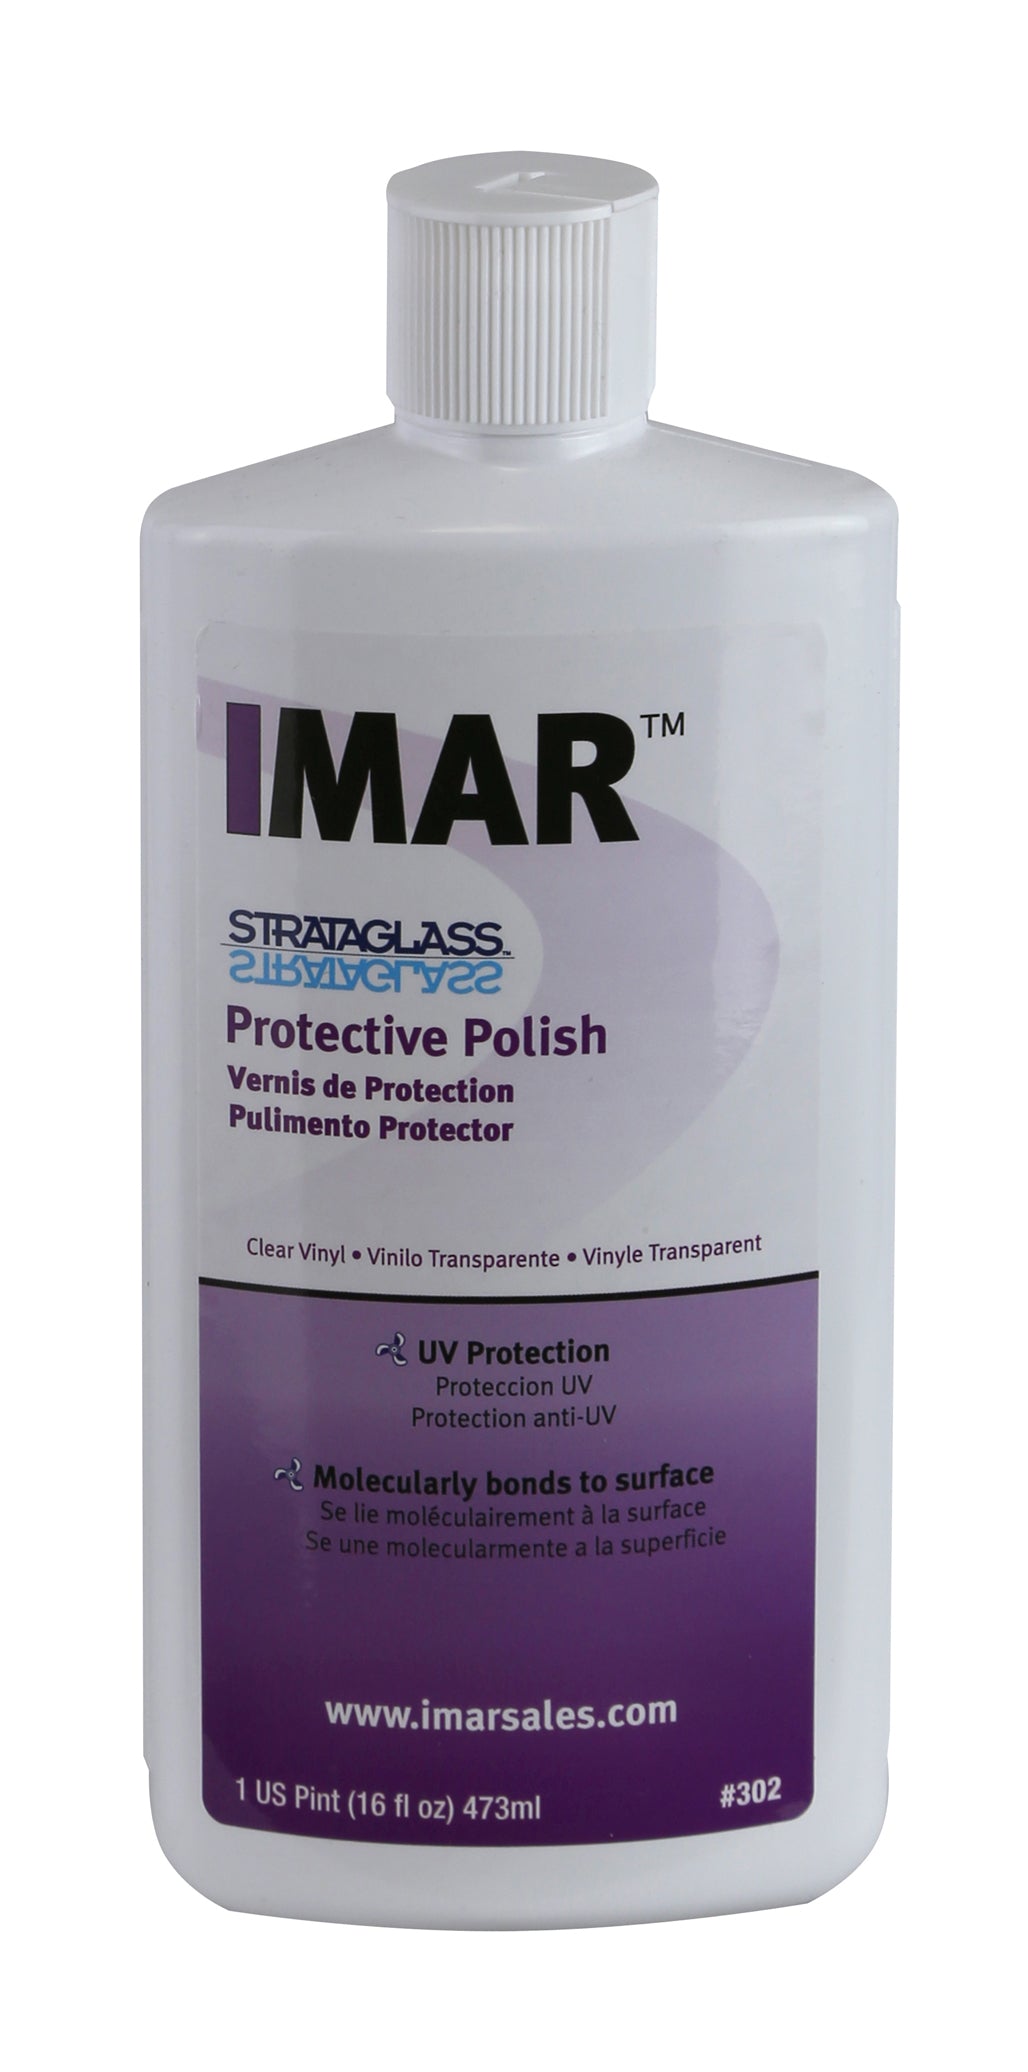 IMAR Strataglass Protective Polish - 16 Ounce